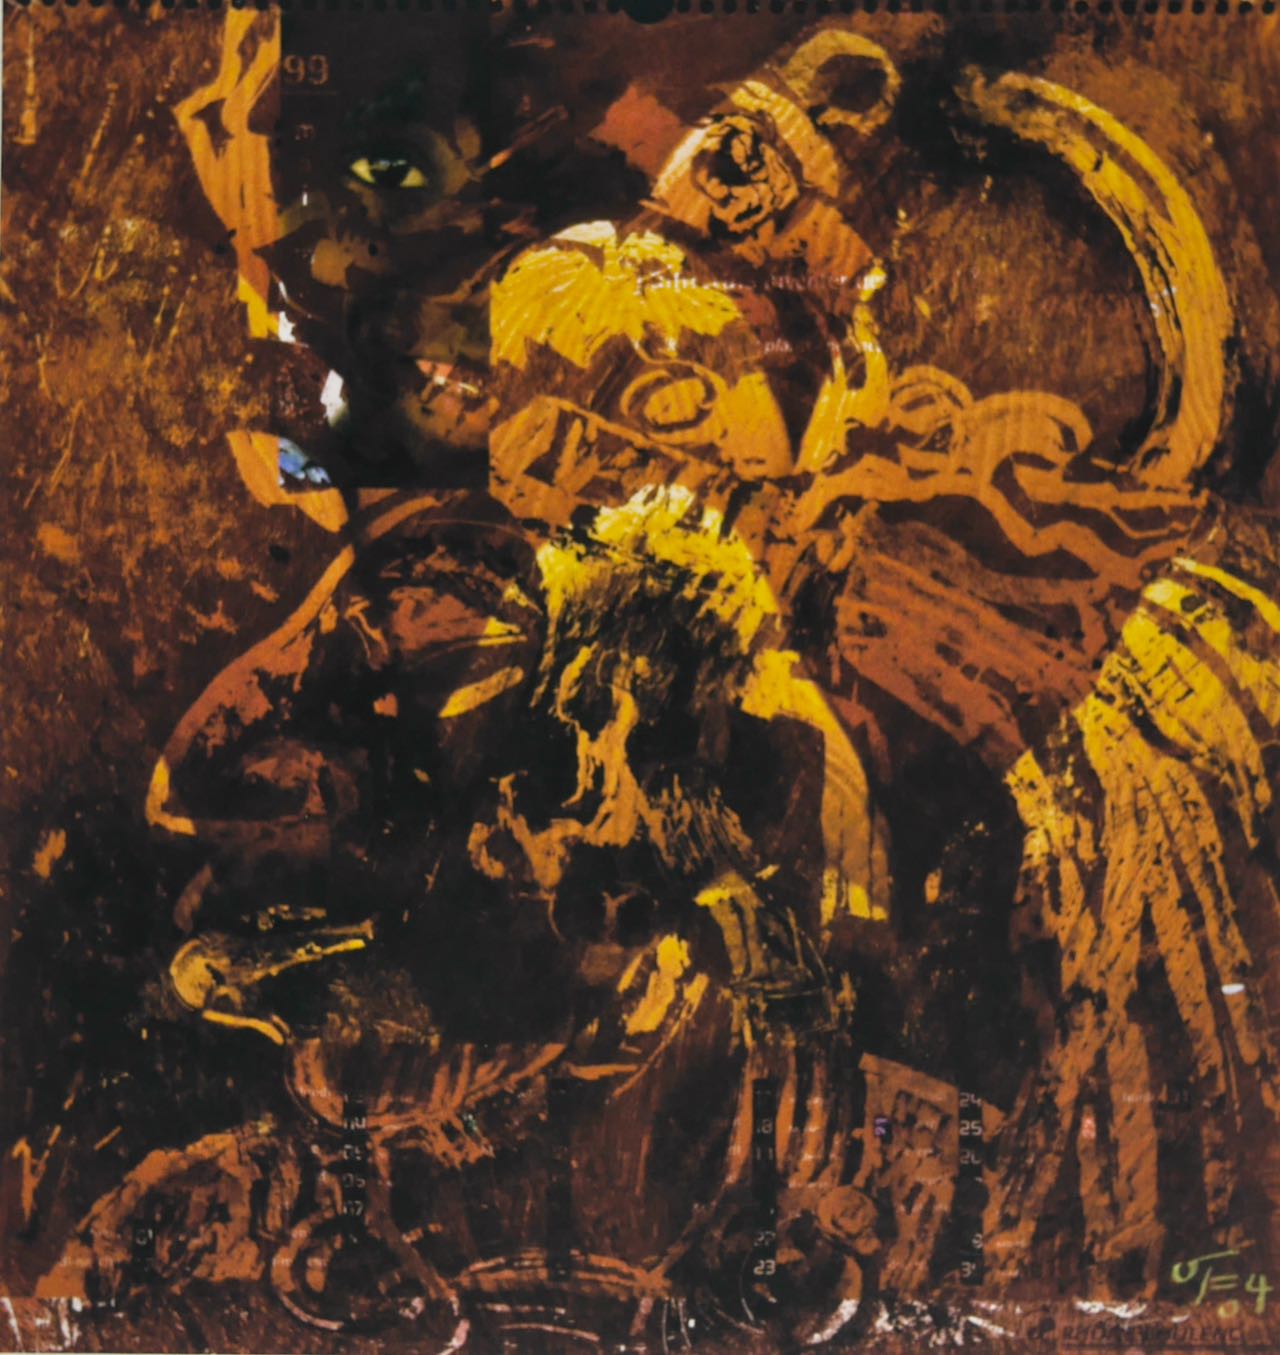 Herrscher Chan Bahlum (Palenque) 2004, 47 x 49 cm